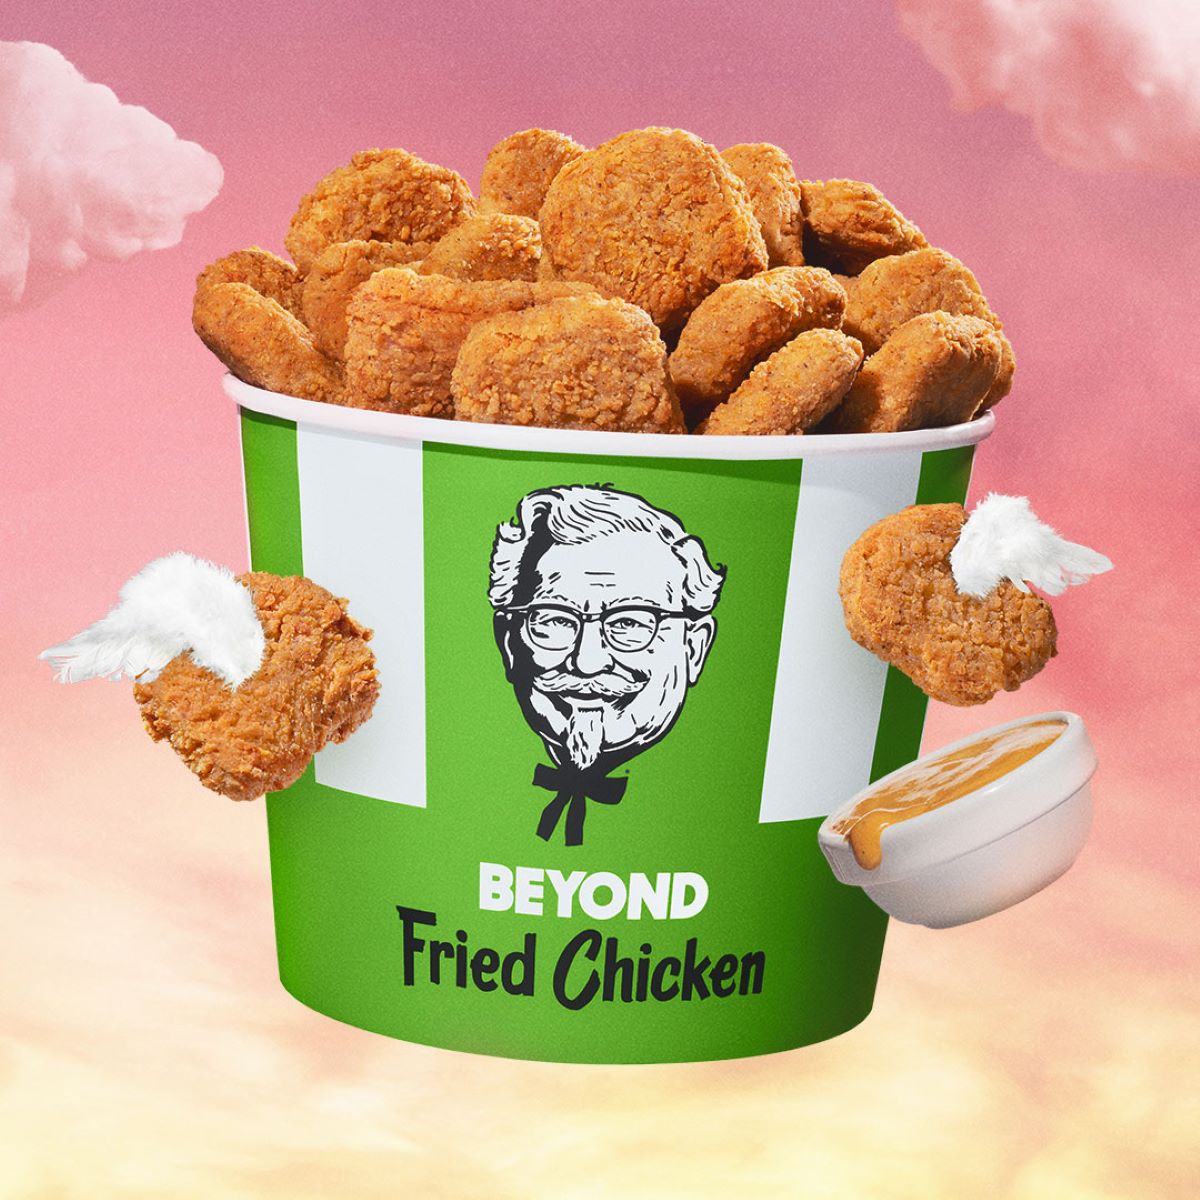 Solo faltan unos días para que el Beyond Fried Chicken se ofrezca en los restaurantes de KFC por tiempo limitado y hasta agotar existencias.